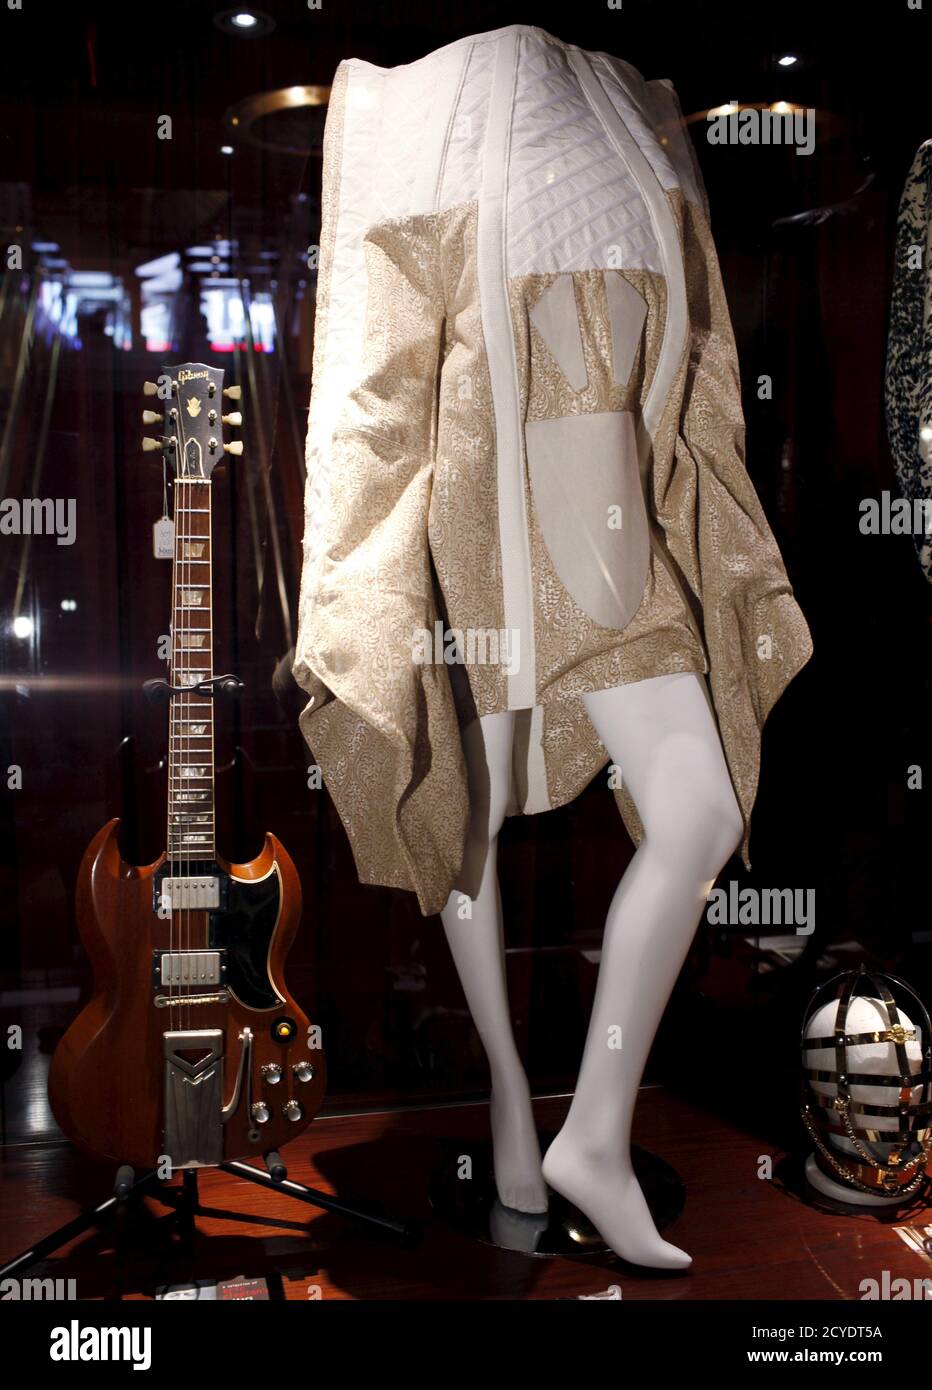 Ein von Thomas Hanisch entworfener avantgardistischer Mantel, der von der  Sängerin Lady Gaga an ihrem 28. Geburtstag 2014 getragen wird, ist zusammen  mit einer Gibson SG Les Paul Gitarre zu sehen, die